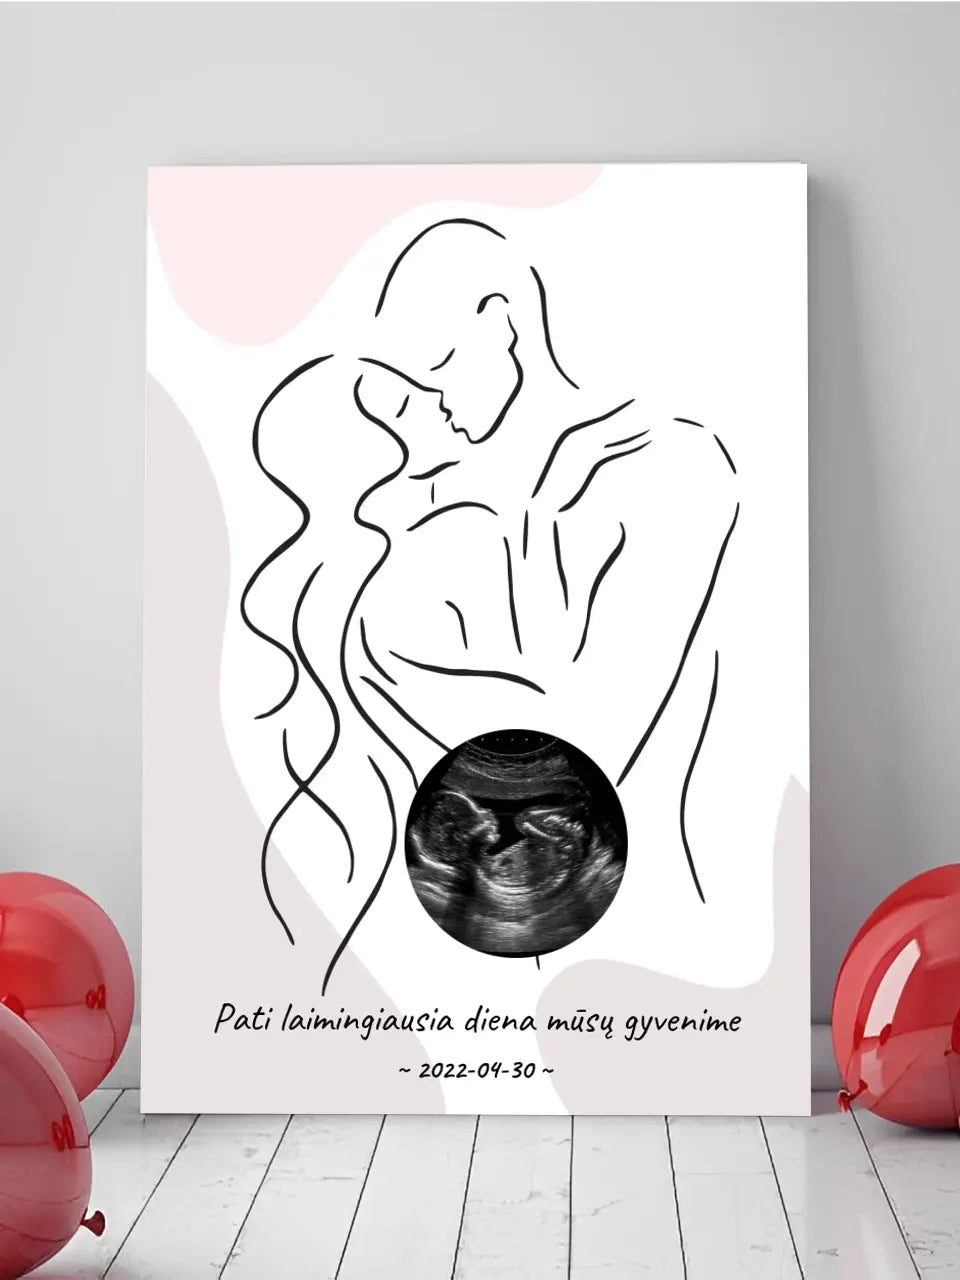 Personalizuotas nėščiųjų echoskopijos tyrimo spaudinys ant drobės, su jūsų nuotrauką ir linijine iliustracija